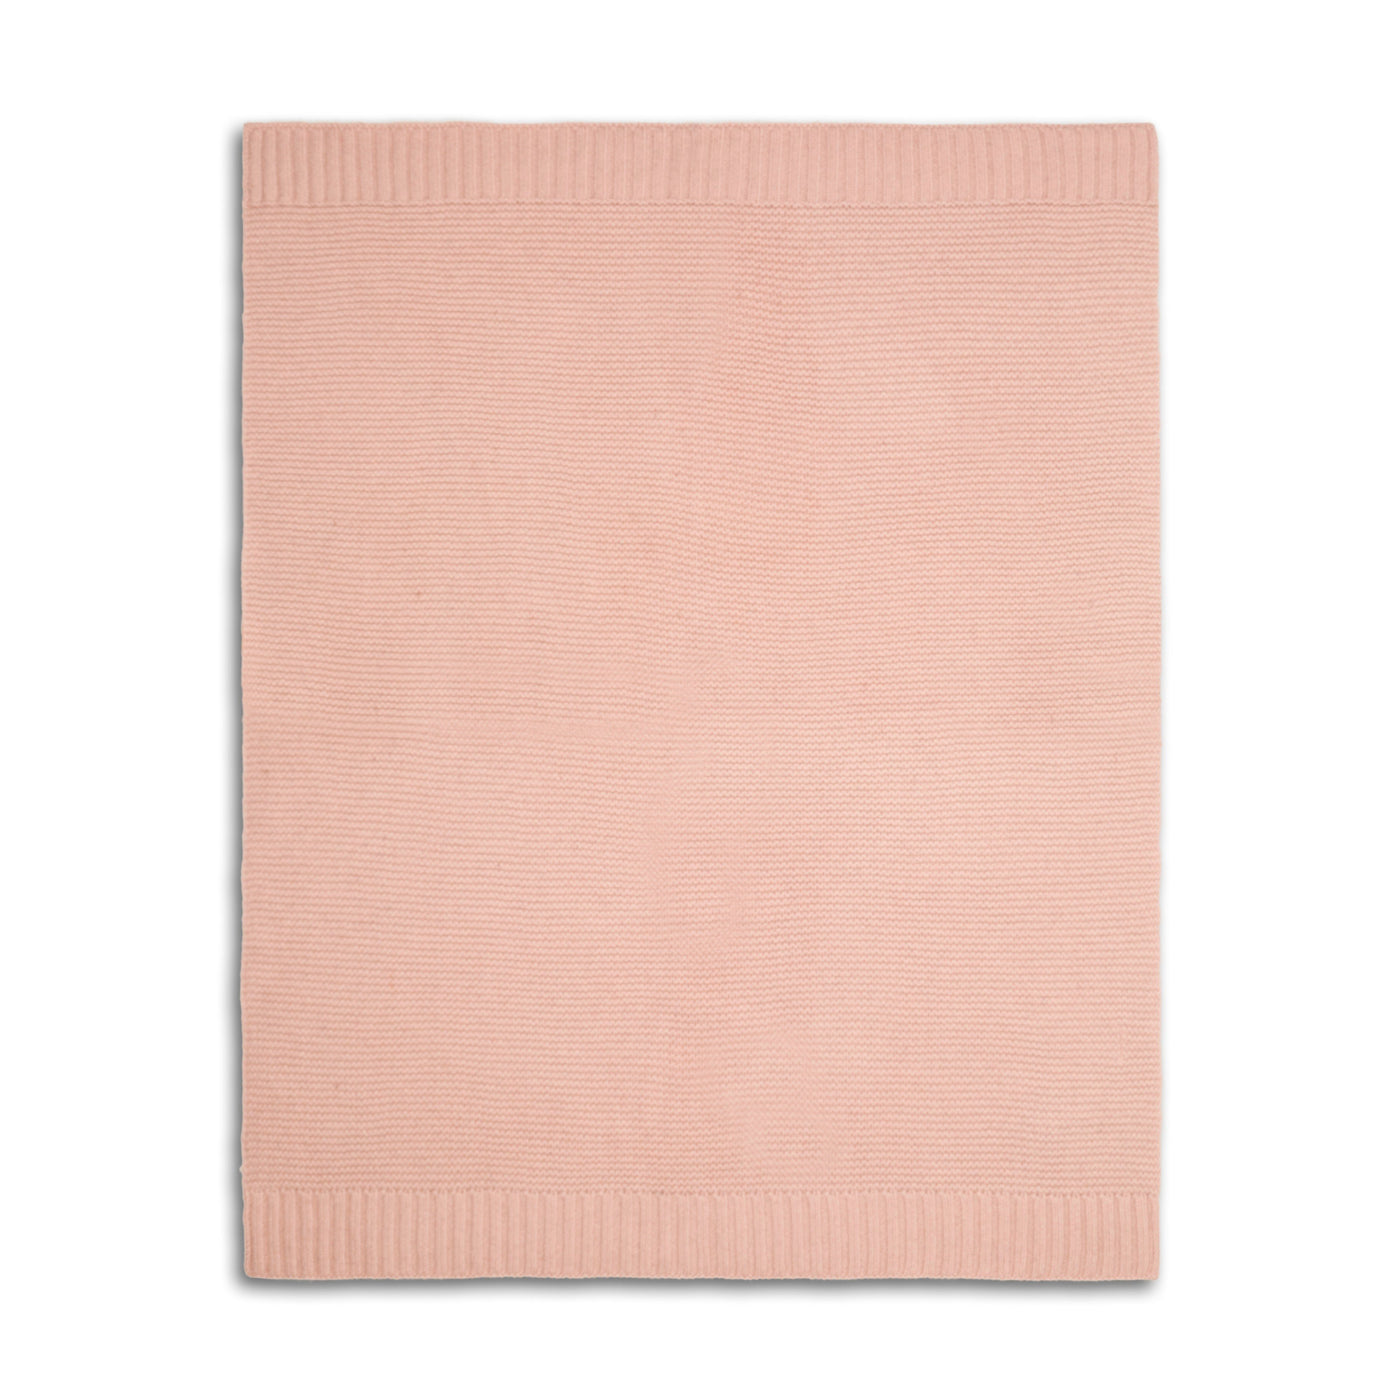 Blanket#1 Pink blush